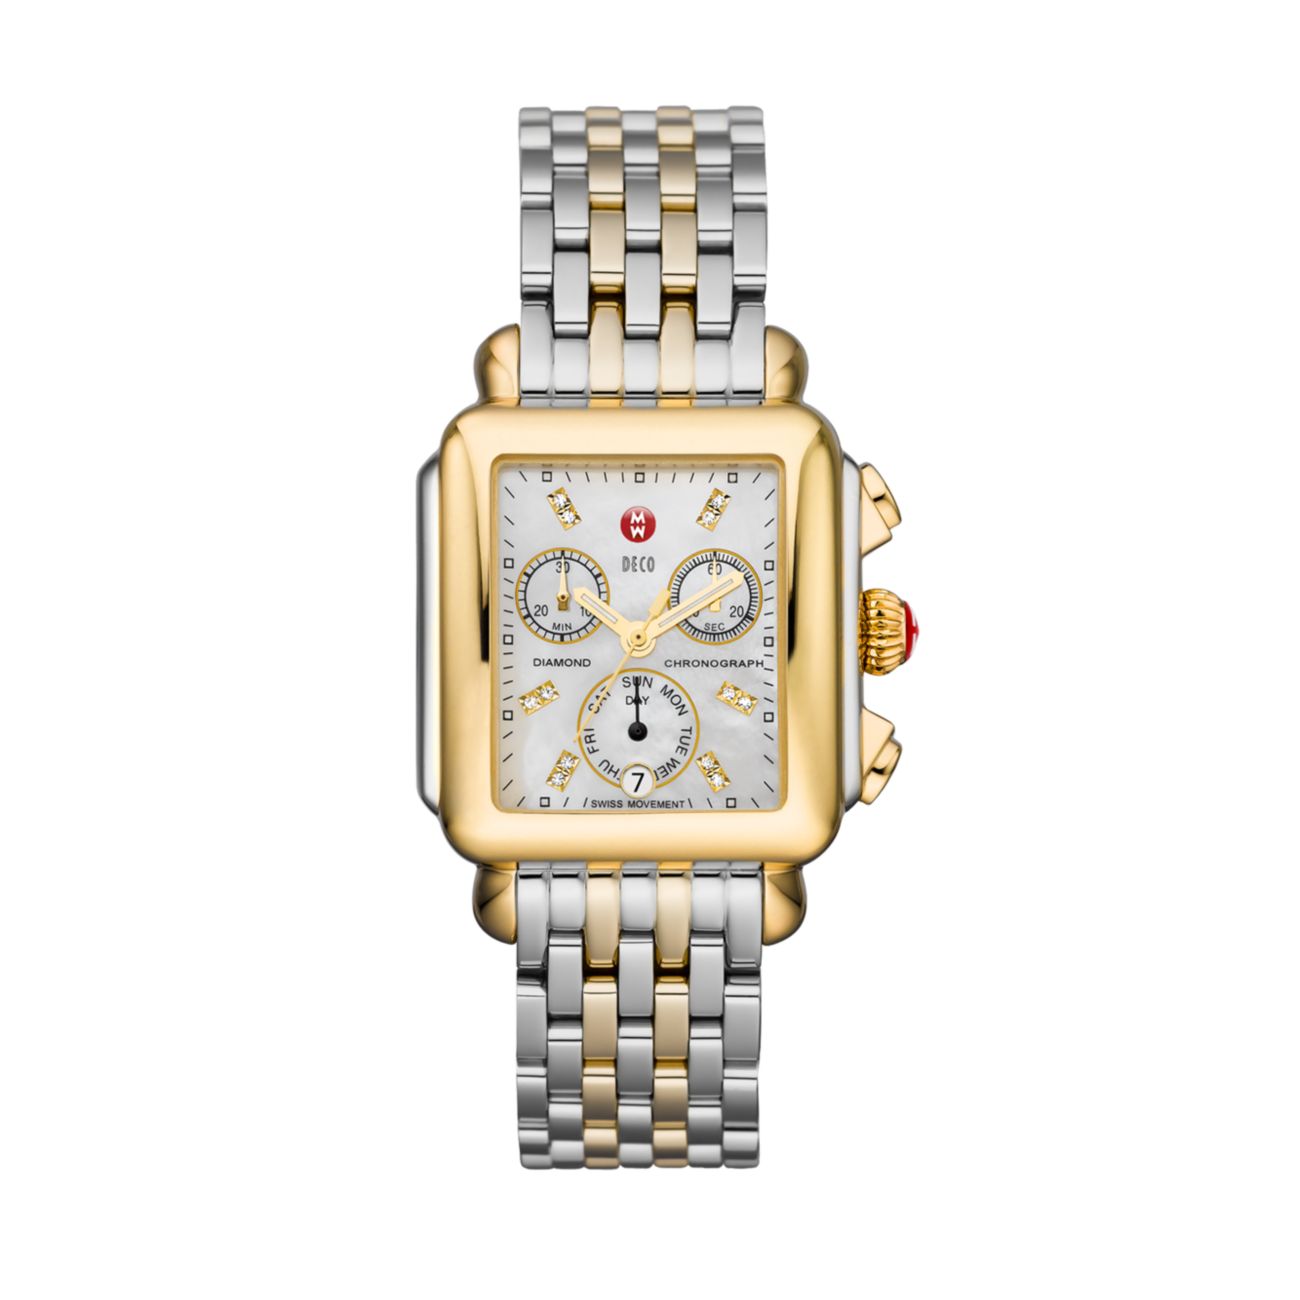 Deco 18 Diamond, перламутр, позолота 18 карат и покрытие Часы-браслет из нержавеющей стали с хронографом Michele